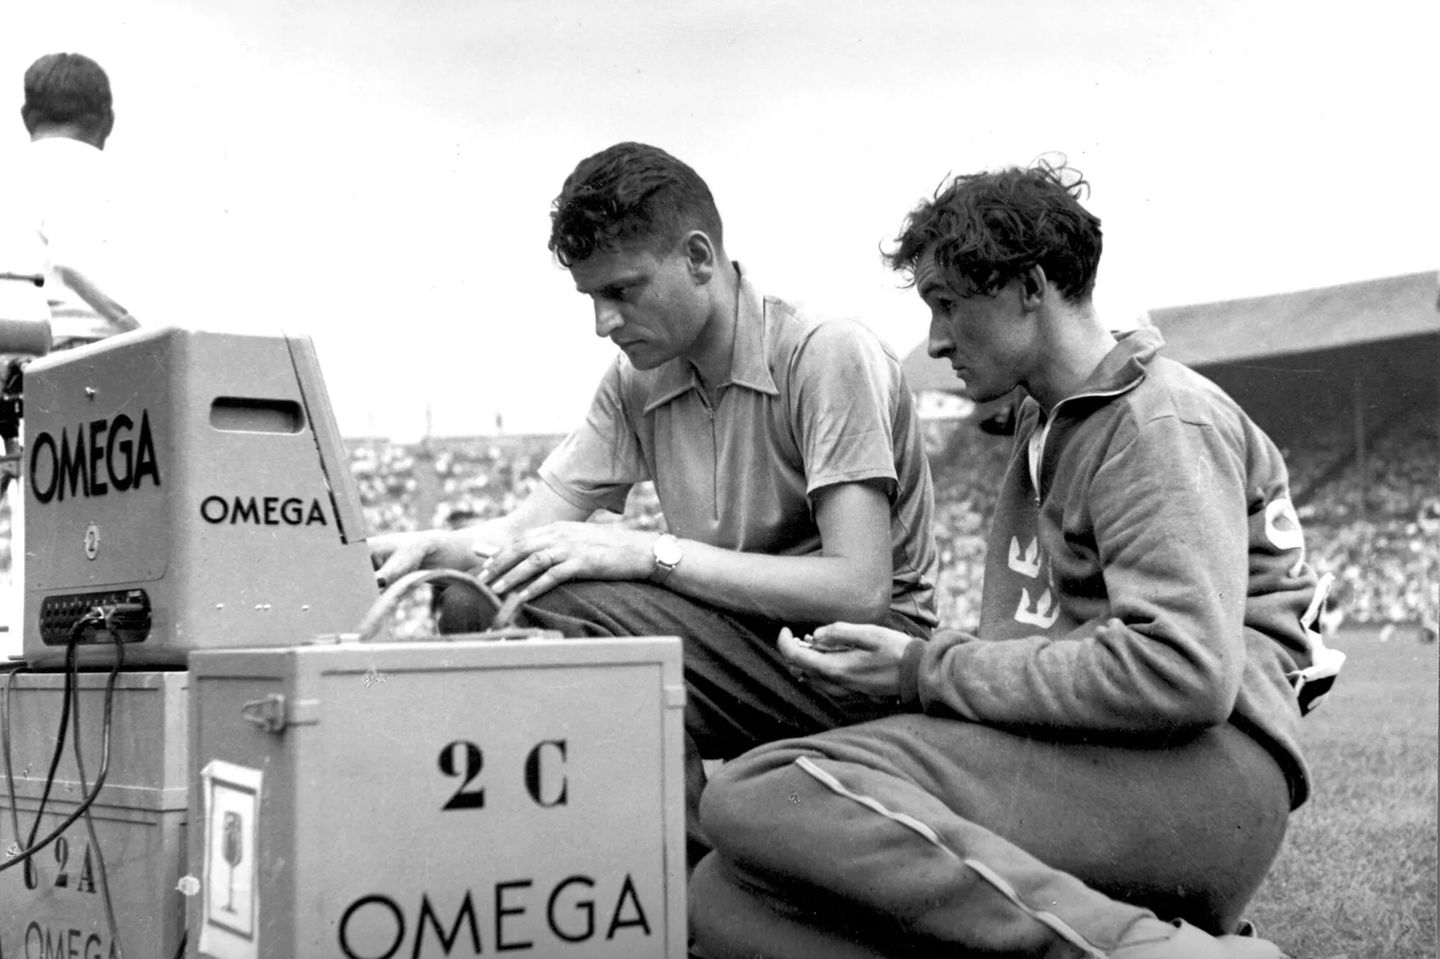 Die von Omega entwickelten fotoelektronischen Zellen („Magic Eye“) hielten erstmals bei den Spielen von London 1948 den Moment der Ziellinien-Überquerung exakt fest